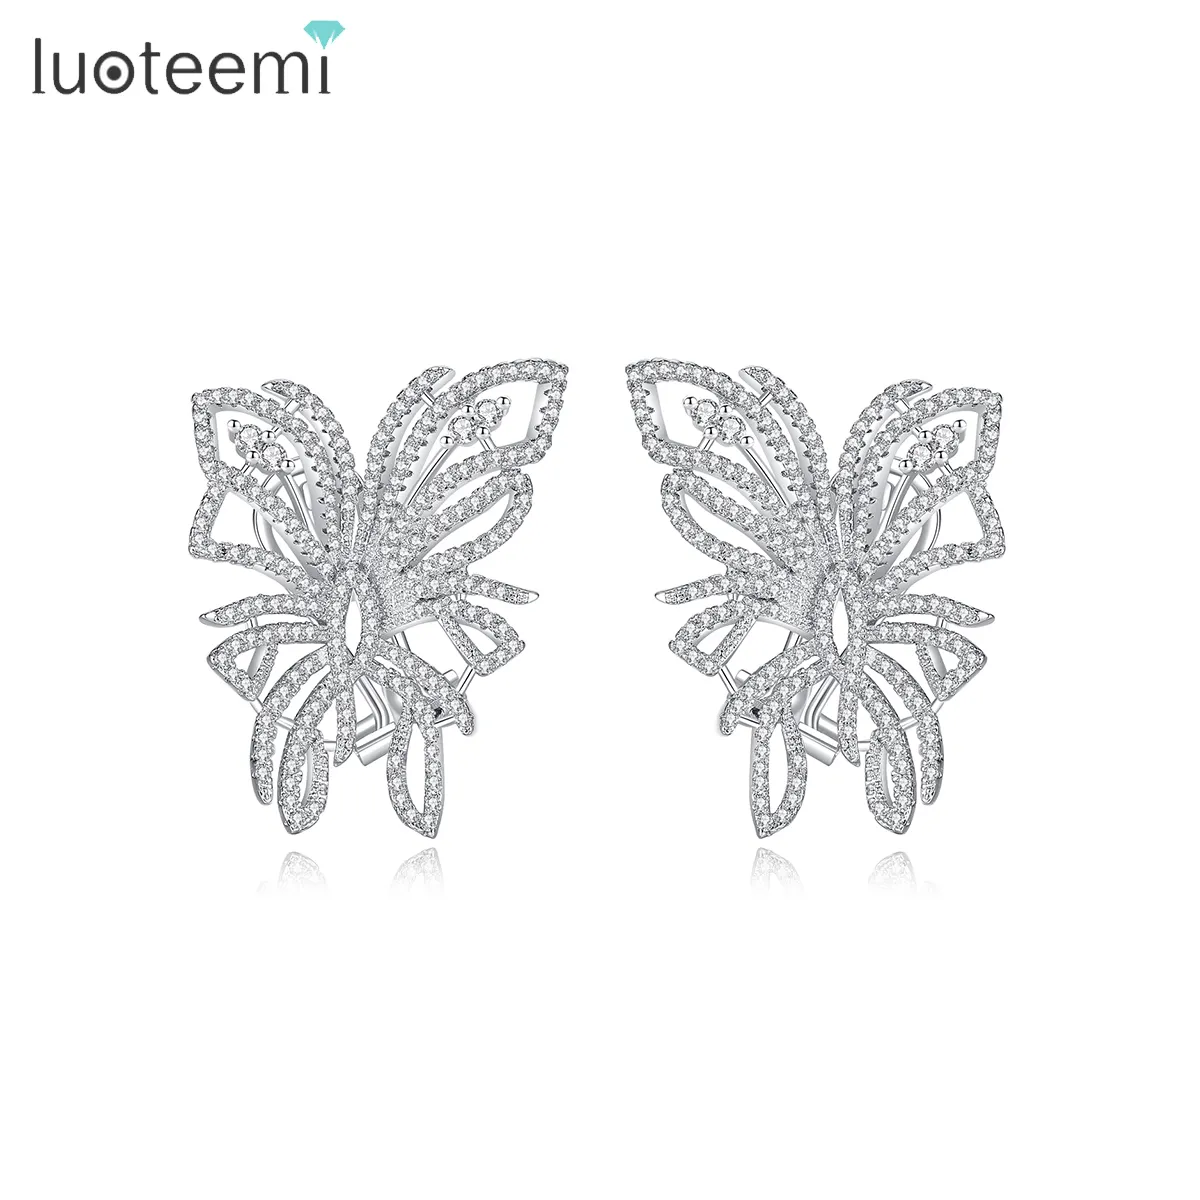 LUOTEEMI sıcak satış moda kelebek tasarım kostüm pirinç takı kelebek şekli lüks kristal kübik zirkon küpe